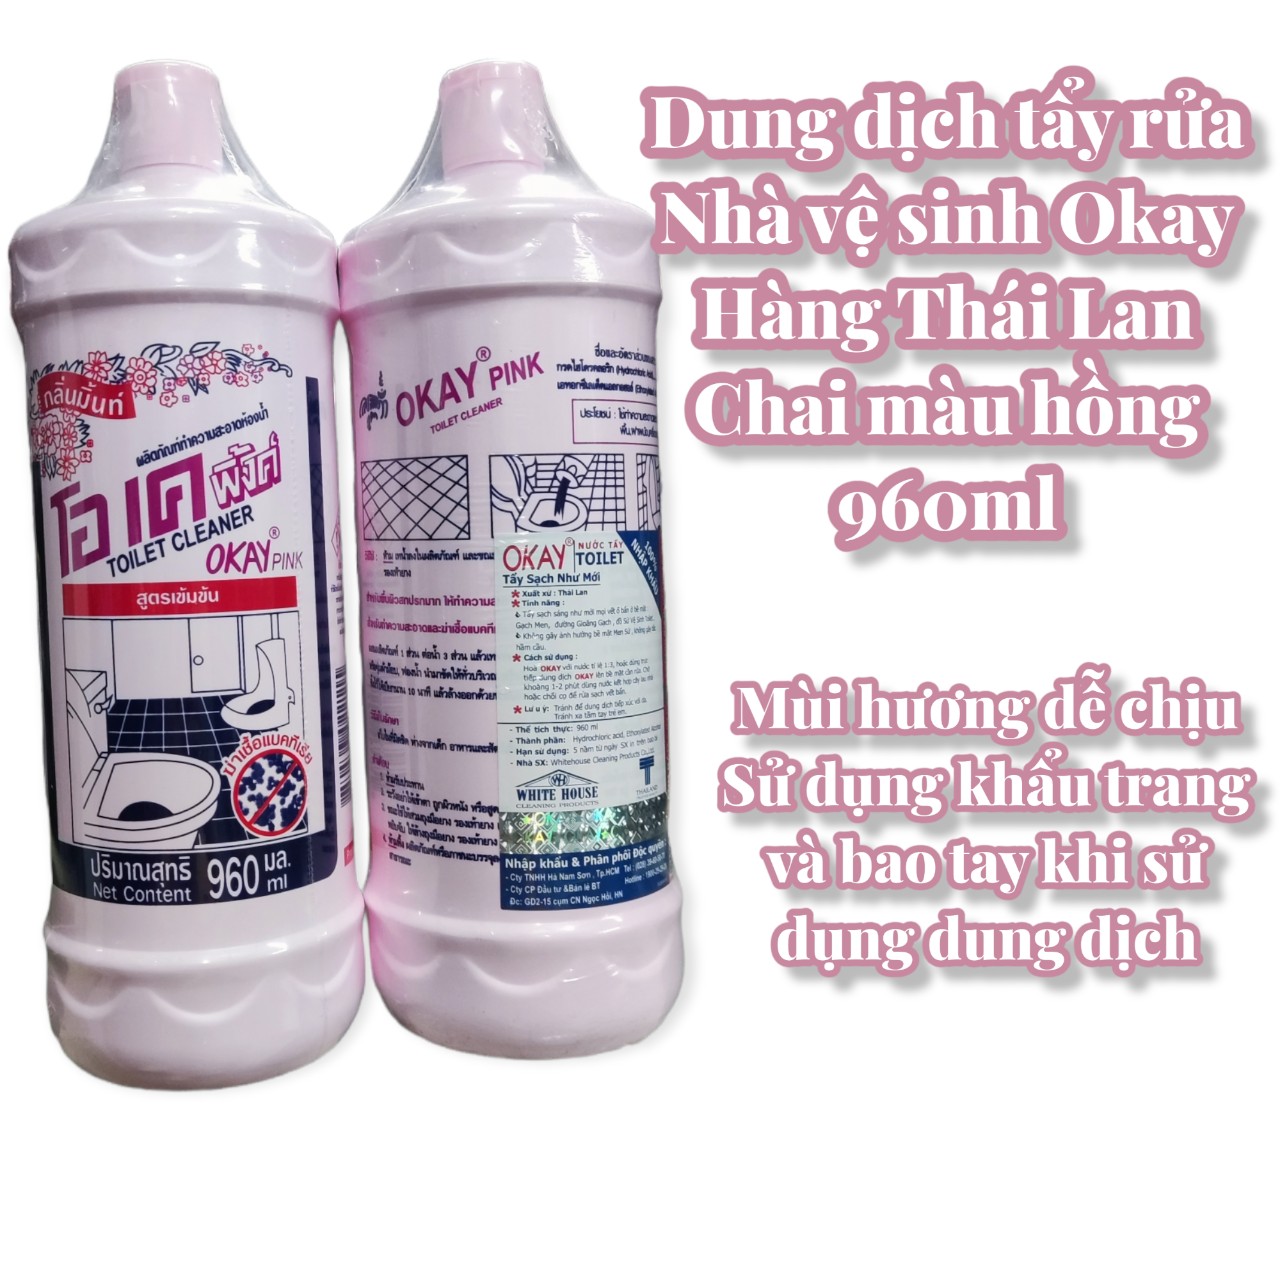 Dung dịch tẩy rửa nhà vệ sinh Okay chai hồng - made in Thailand - dung tích 960ml